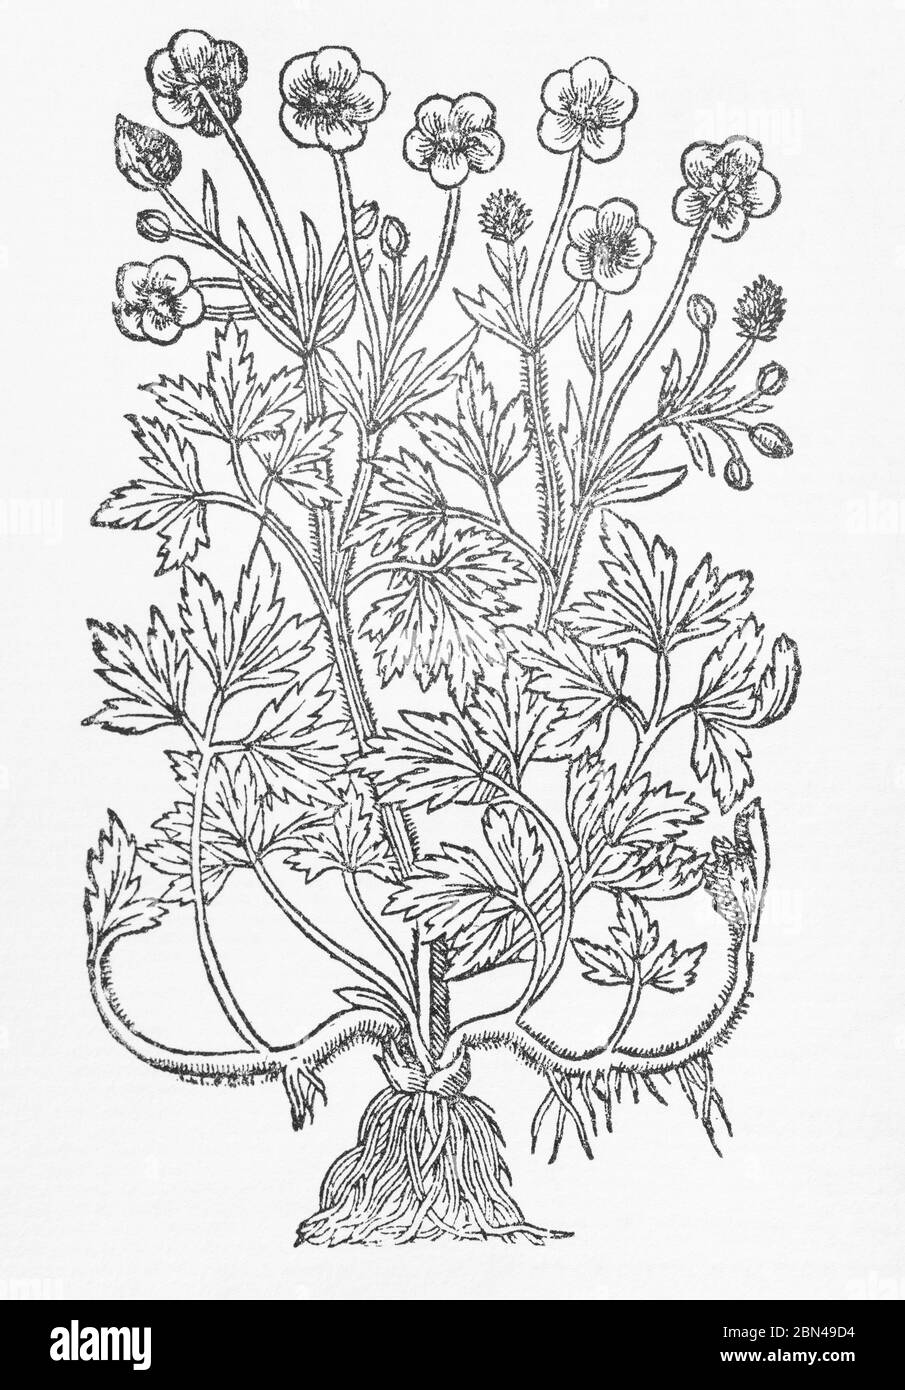 Taglio di legno di corone comune (Buttercup) identificato come Ranunculus pratensis nell'Erball di Gerarde. P804. Non è chiaro che cosa sia il nome latino moderno Foto Stock